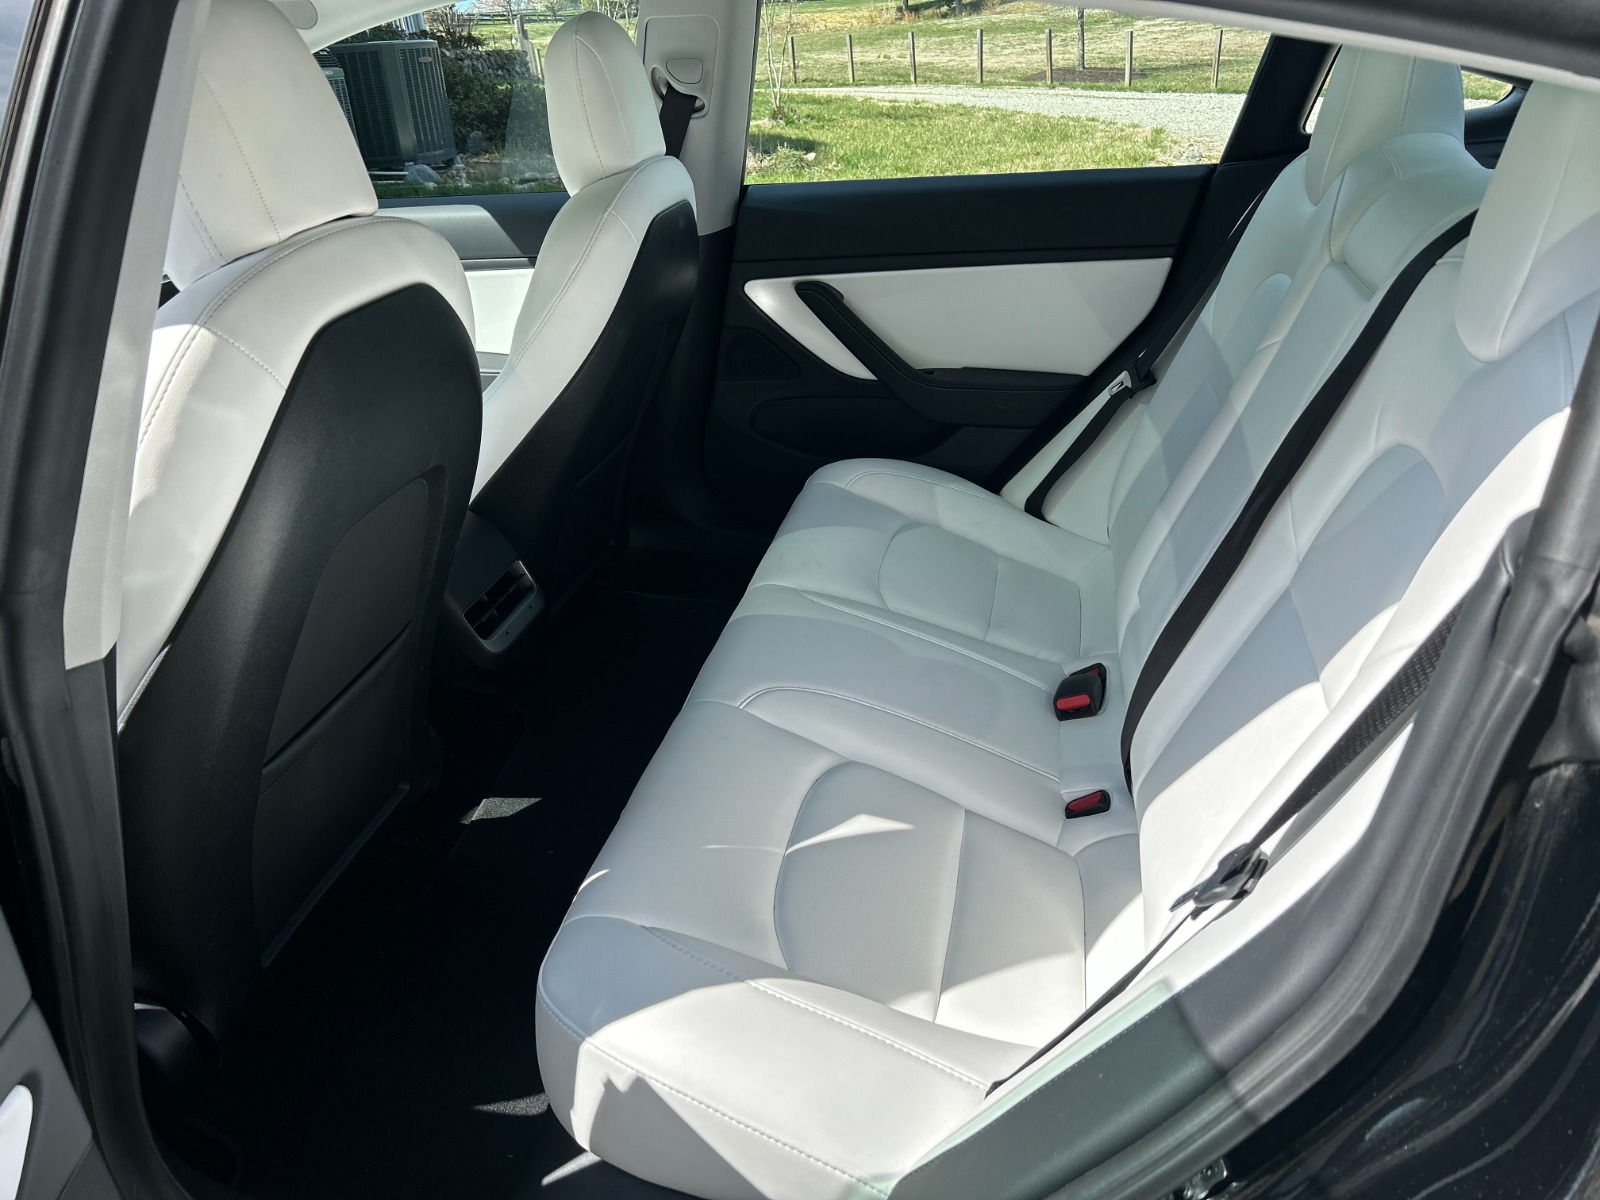 2021 Tesla Model 3 Long Range AWD full